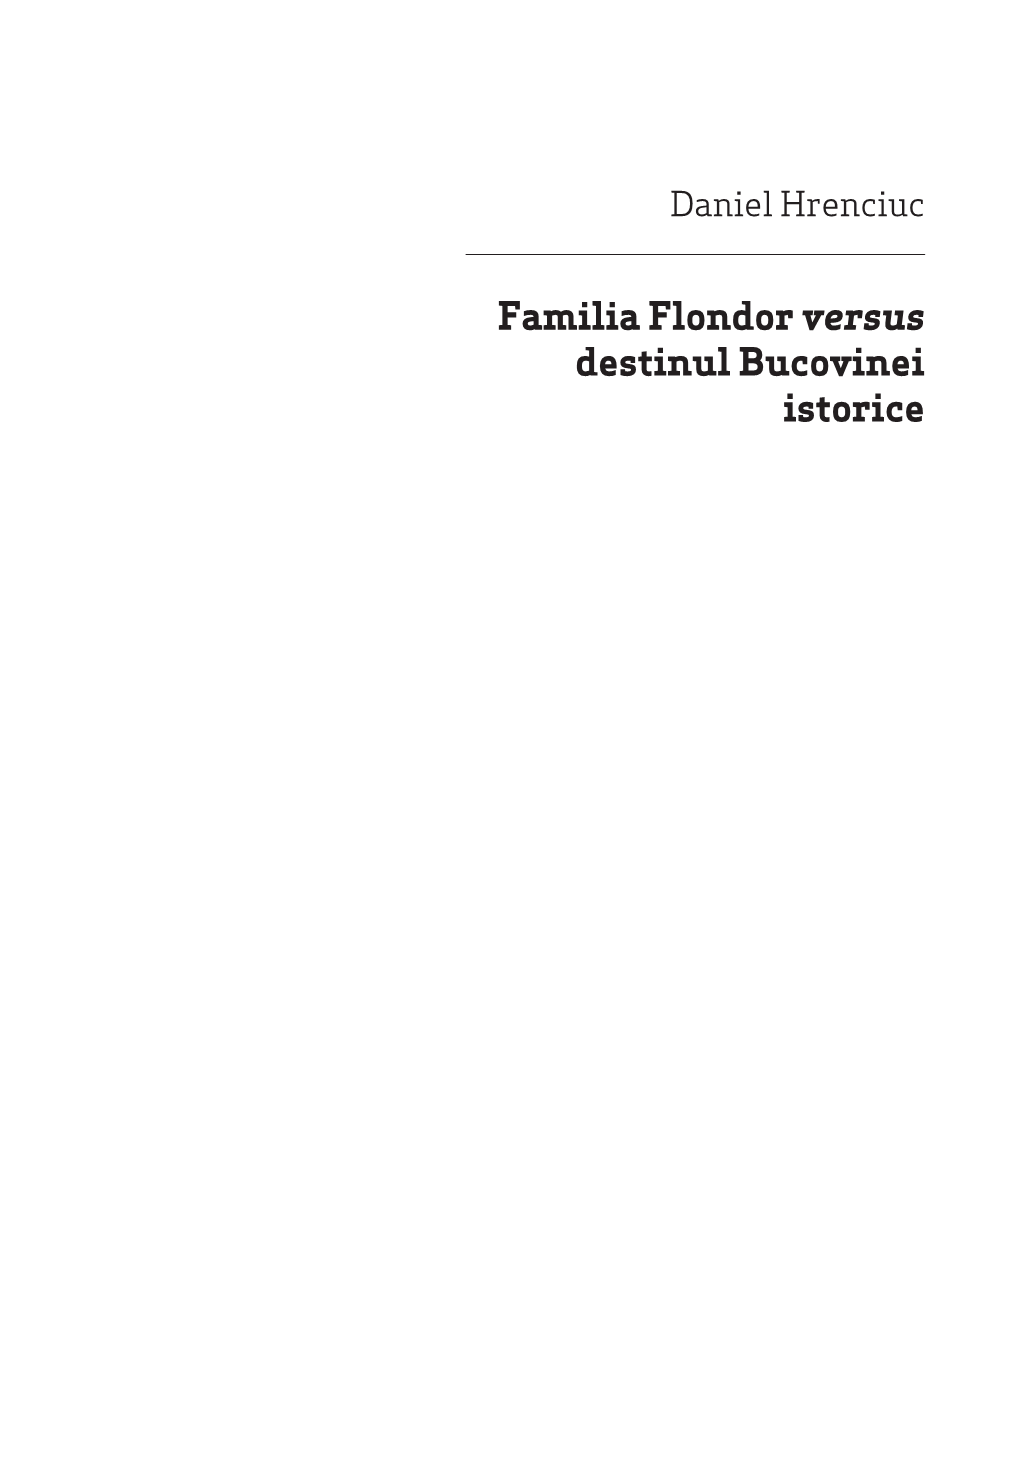 Familia Flondor Versus Destinul Bucovinei Istorice